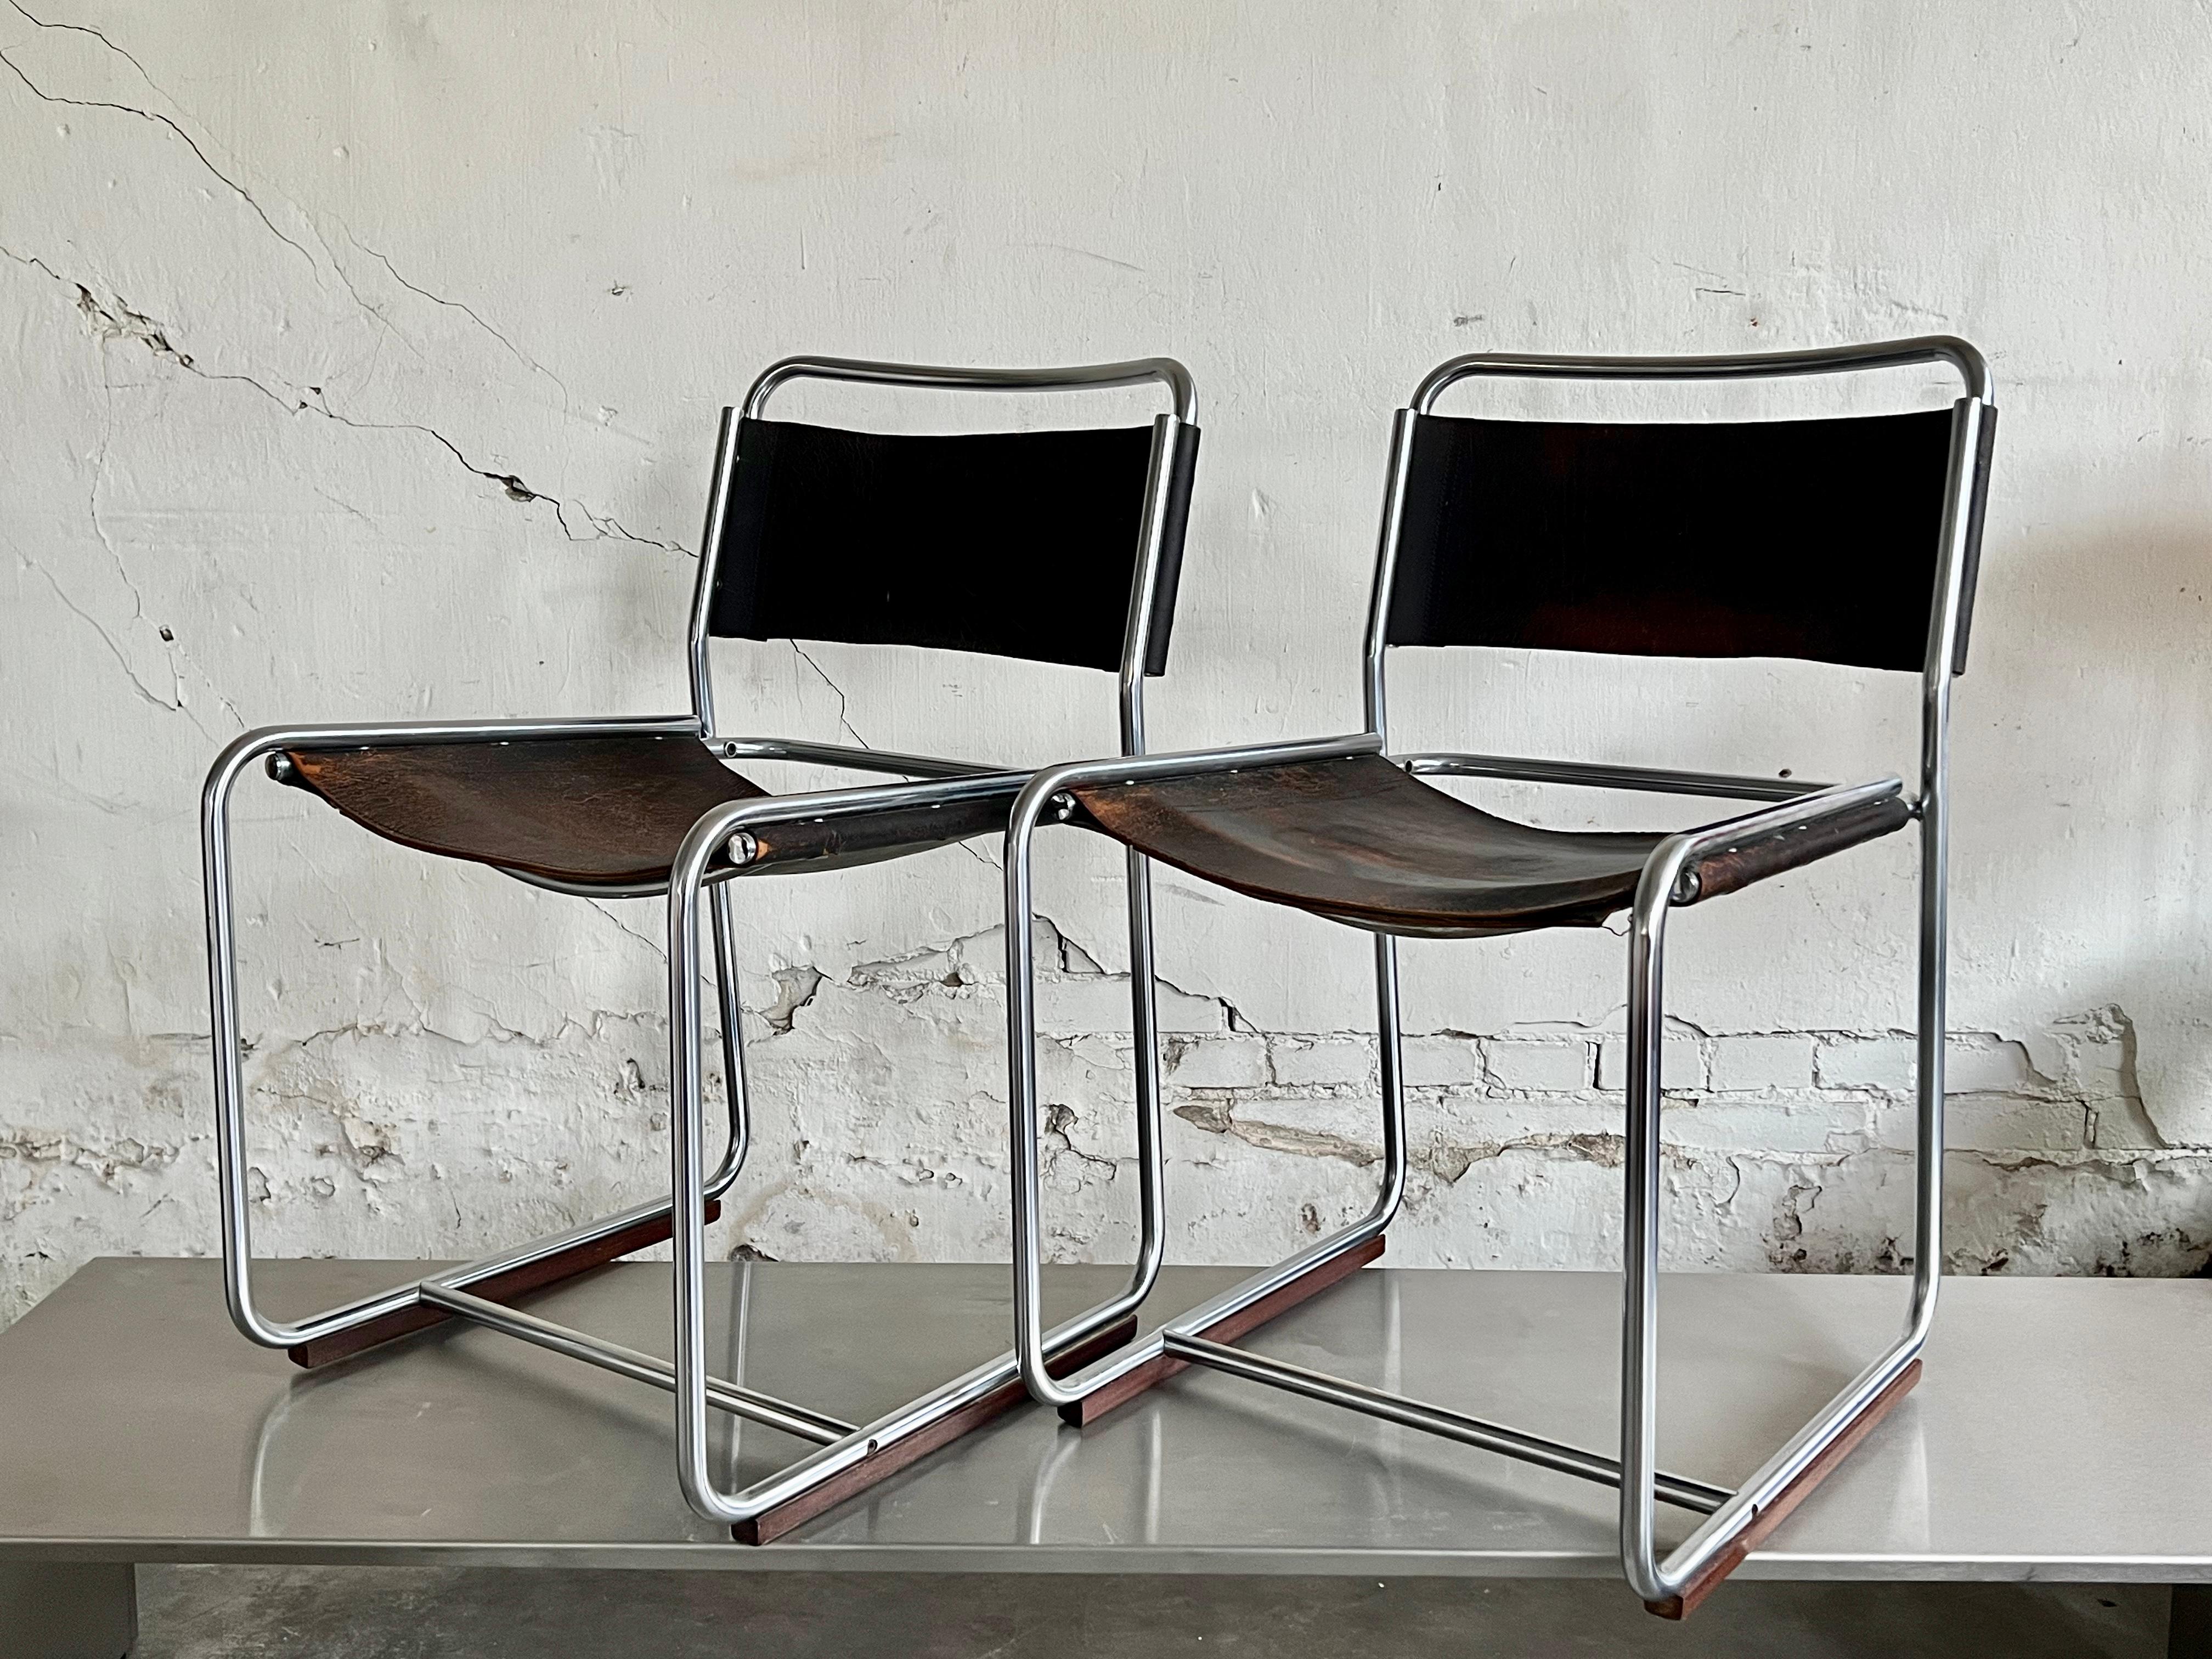 Seltenes Paar SE18-Stühle der belgischen Designer Claire Bataille und Paul Ibens, hergestellt von 't Spectrum. Dieses Modell wurde nur von 1971 bis 1974 hergestellt. Sehr begrenzt im Vergleich zu anderen Modellen von 't Spectrum, daher ihre